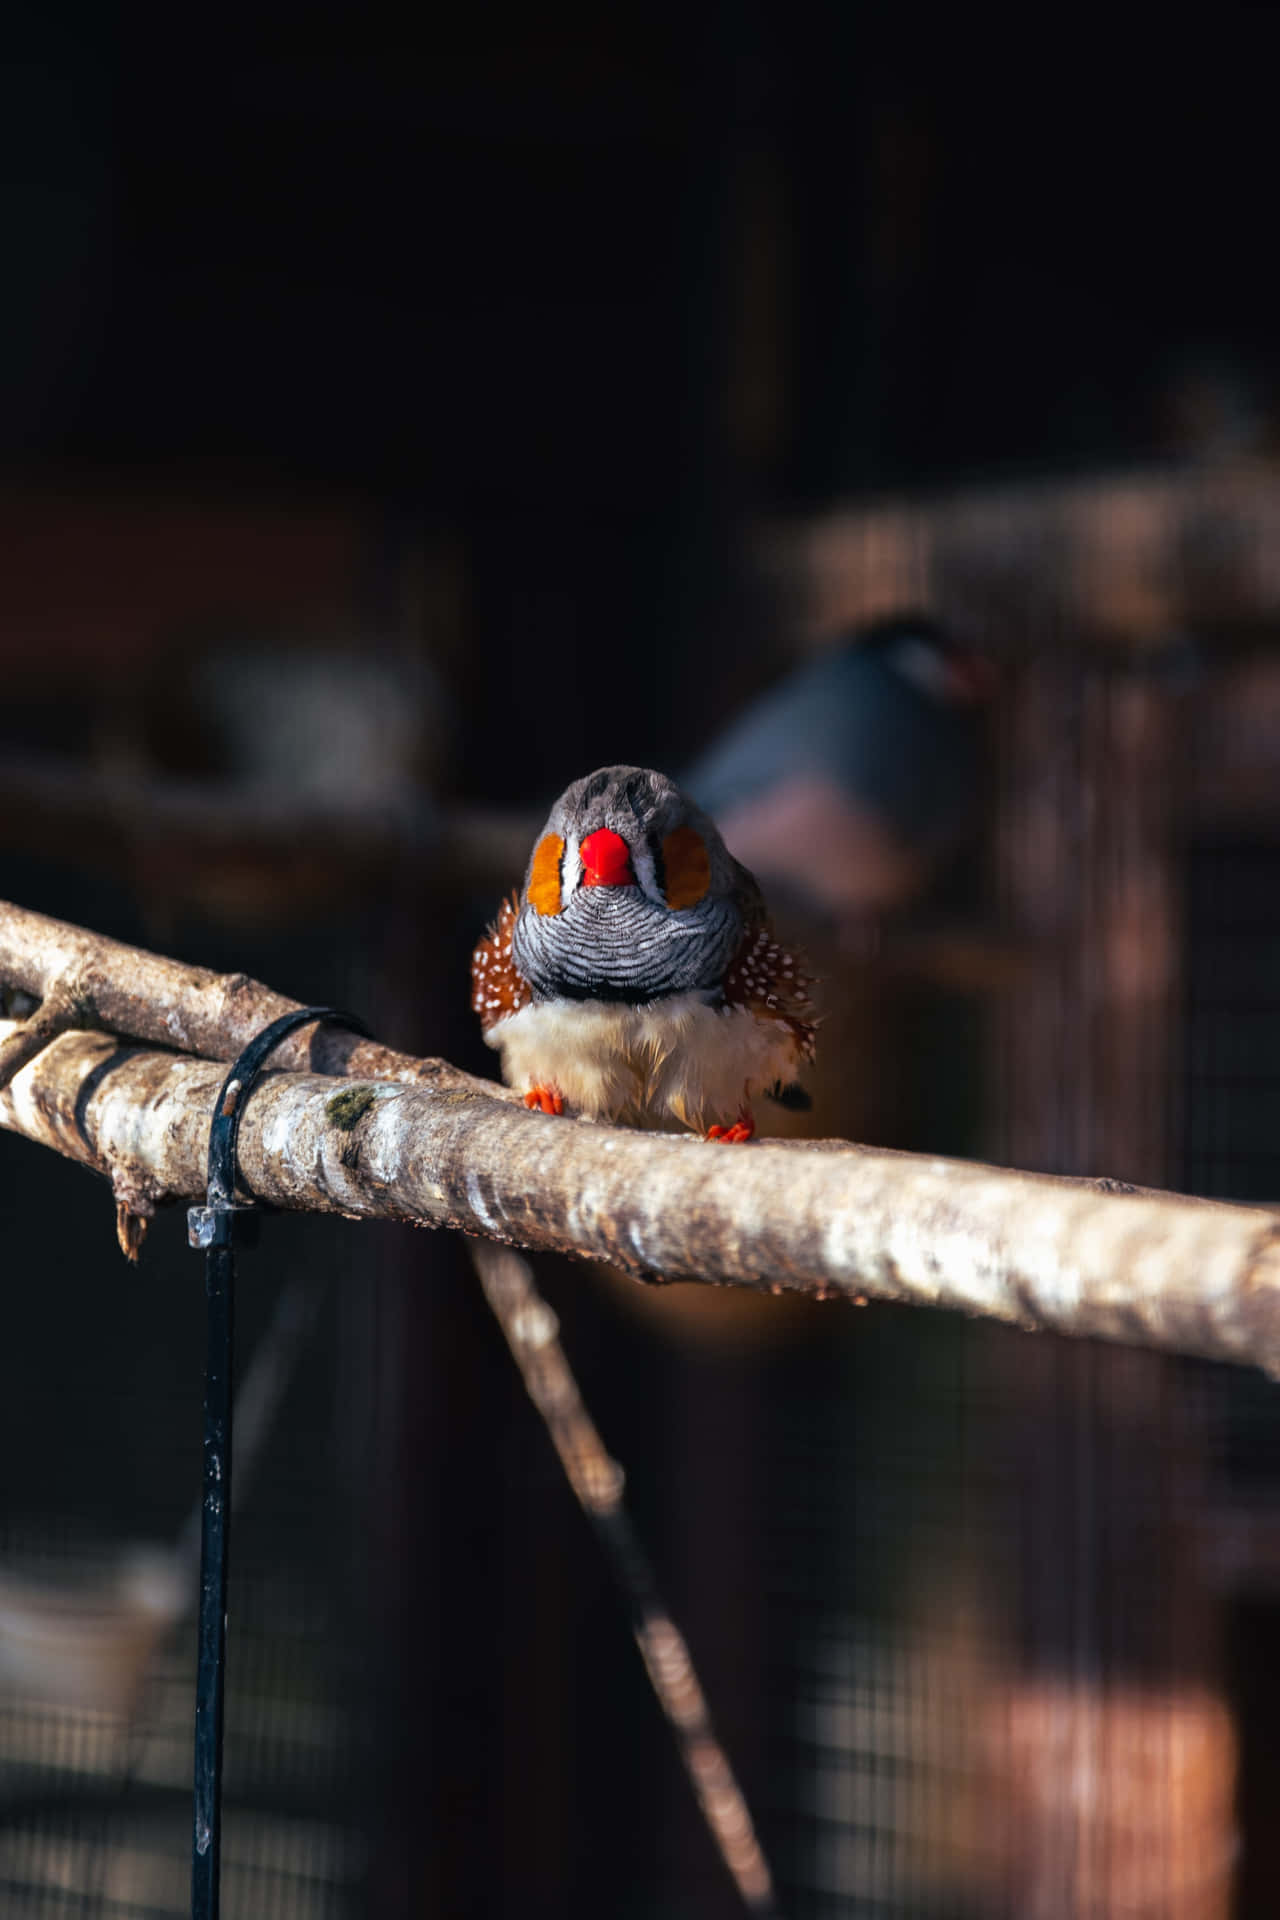 Bestesnaturhintergrundbild: Niedlicher Kleiner Vogel